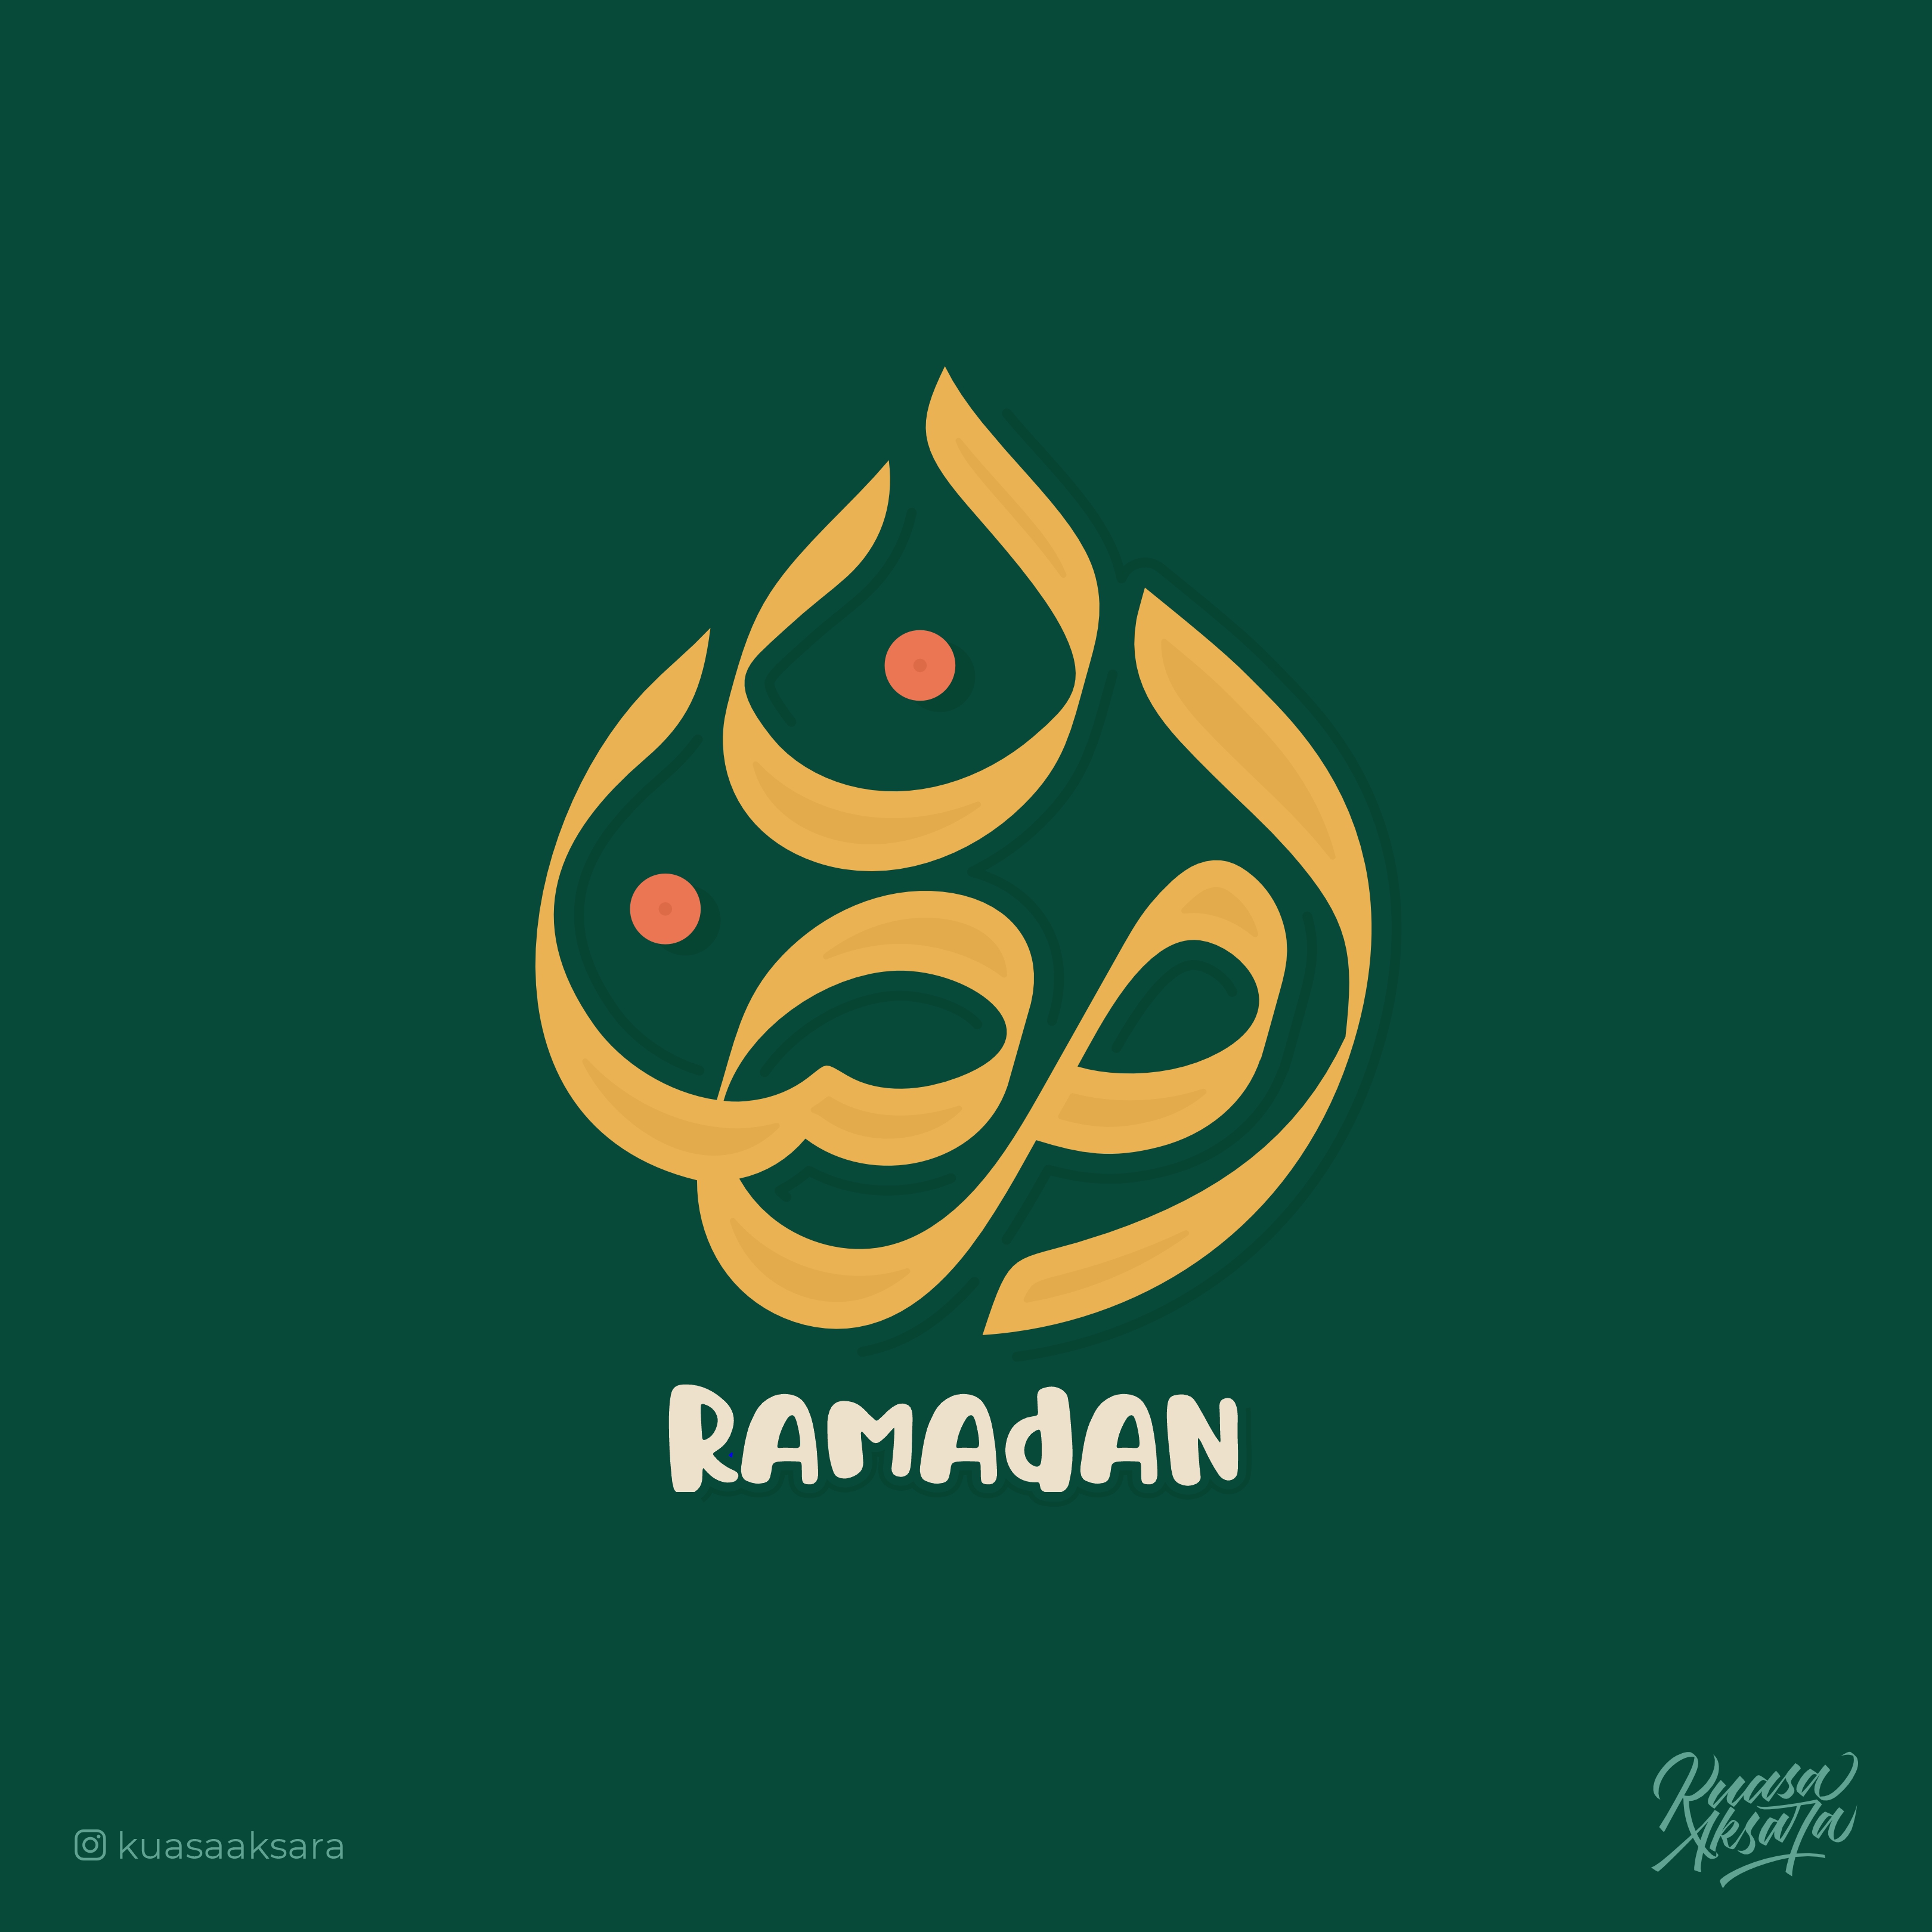 50 Free Ramadan Kareem Logos, Typography Illustrations & Design Ideas |  Ramadan kareem vector, Ramadan kareem, Ramadan background